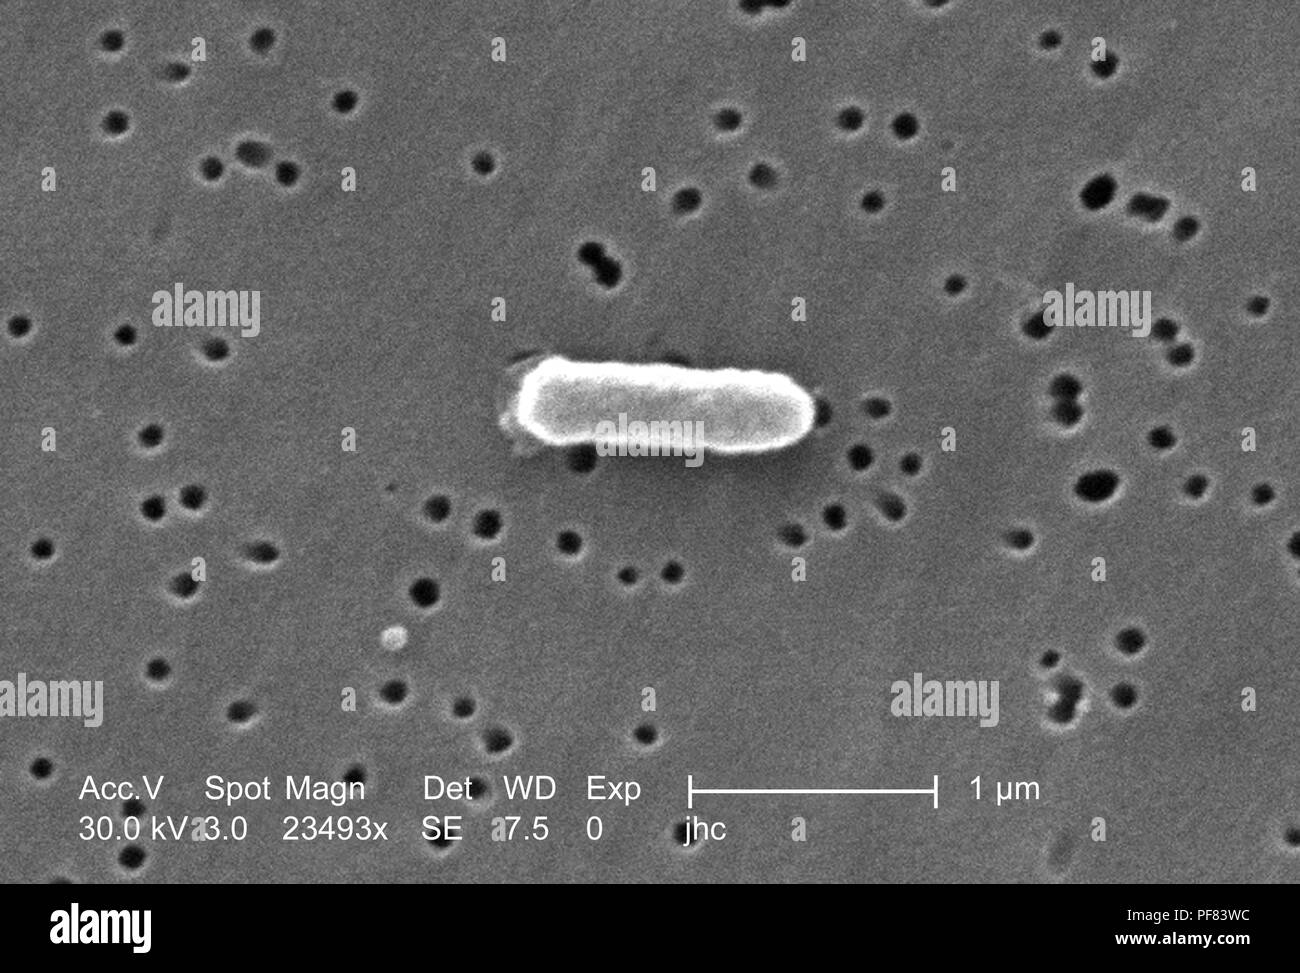 Fortemente ingrandita di un Ralstonia mannitolilytica batterio ha rivelato nel 23493x scansione ingrandita al microscopio elettronico (SEM) immagine, 2006. Immagine cortesia di centri per il controllo delle malattie (CDC) / Judith Noble-Wang, Ph.D. () Foto Stock